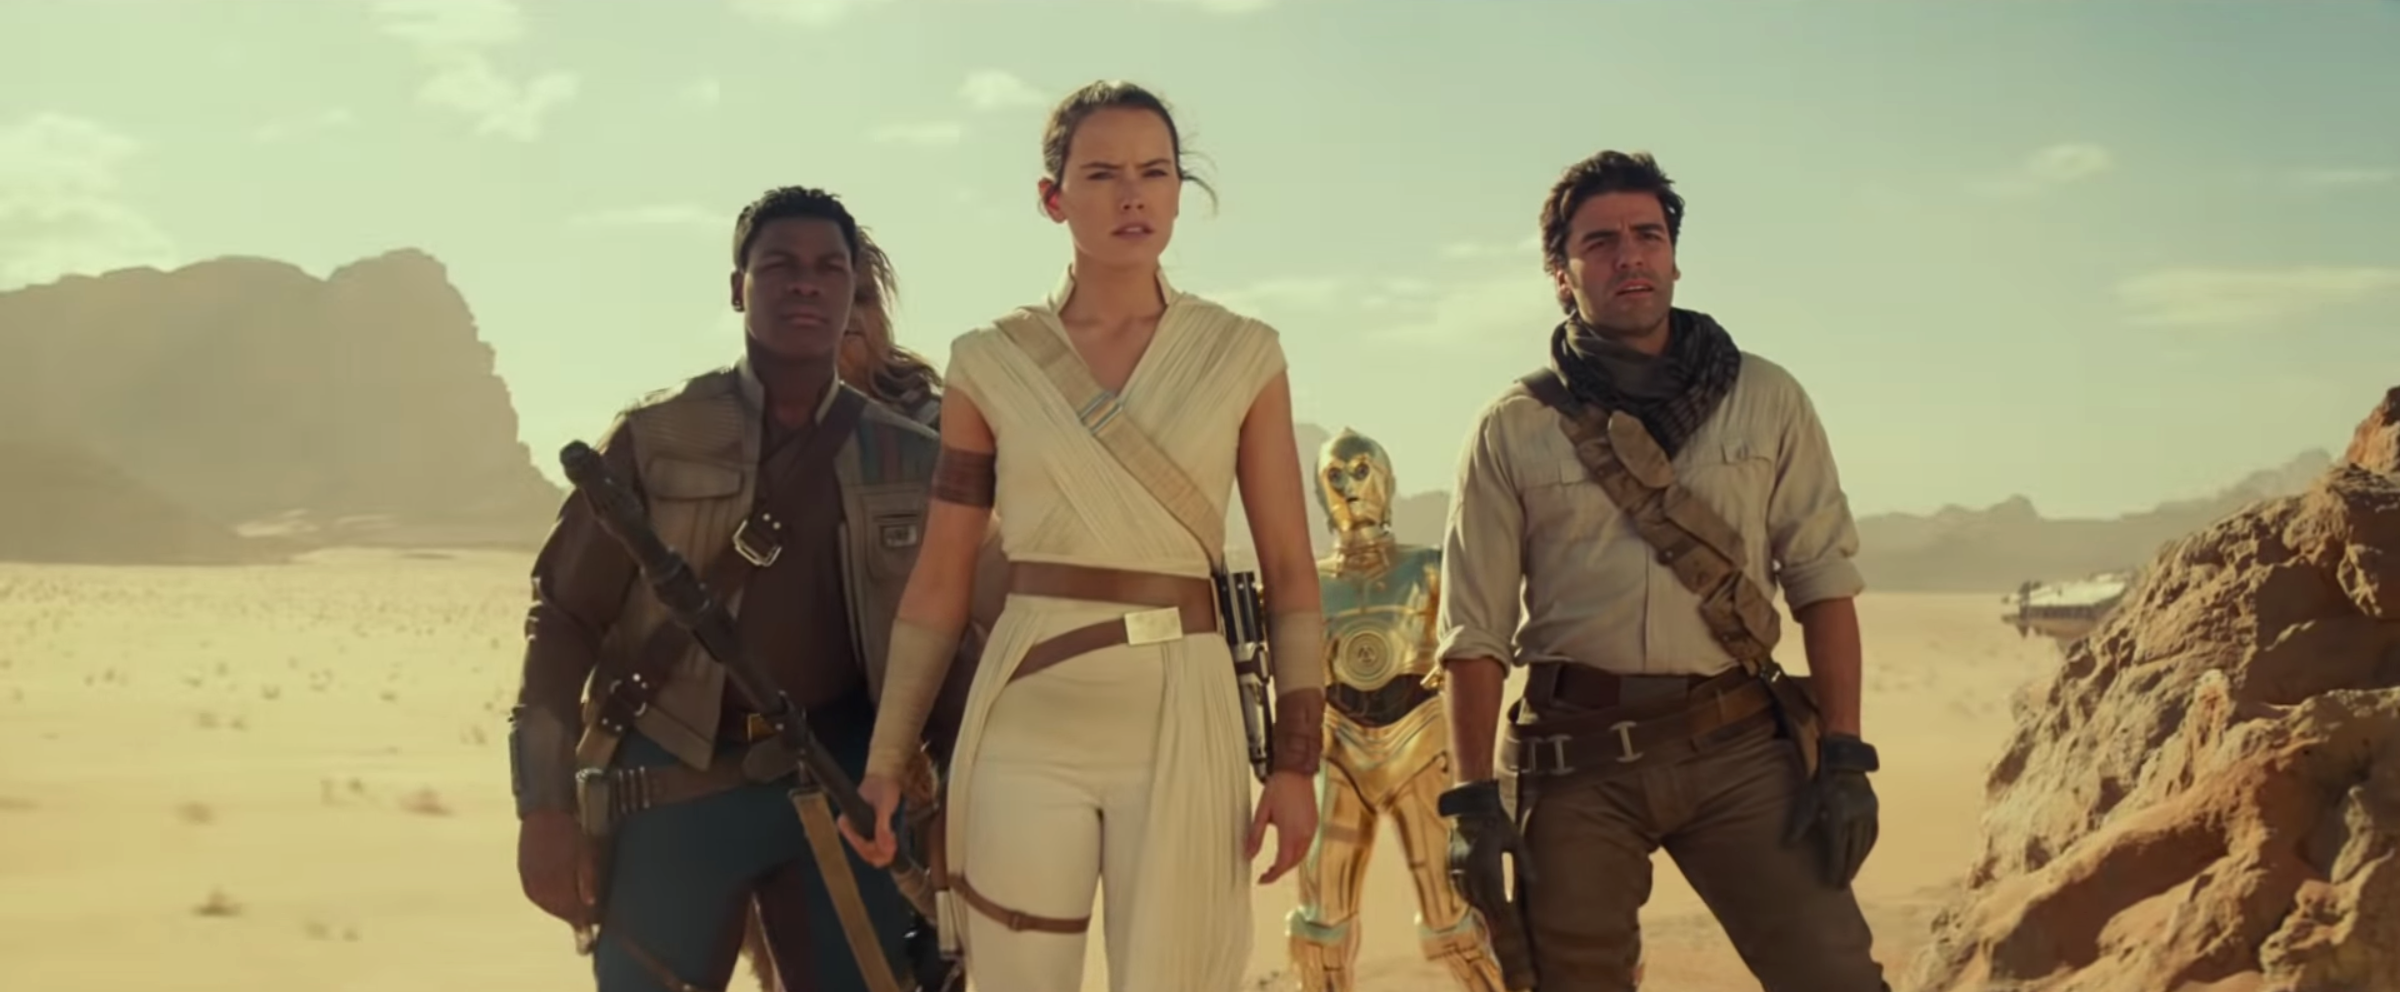 Star Wars 9 : J.J. Abrams clarifie ce que Finn cherche à dire à Rey 